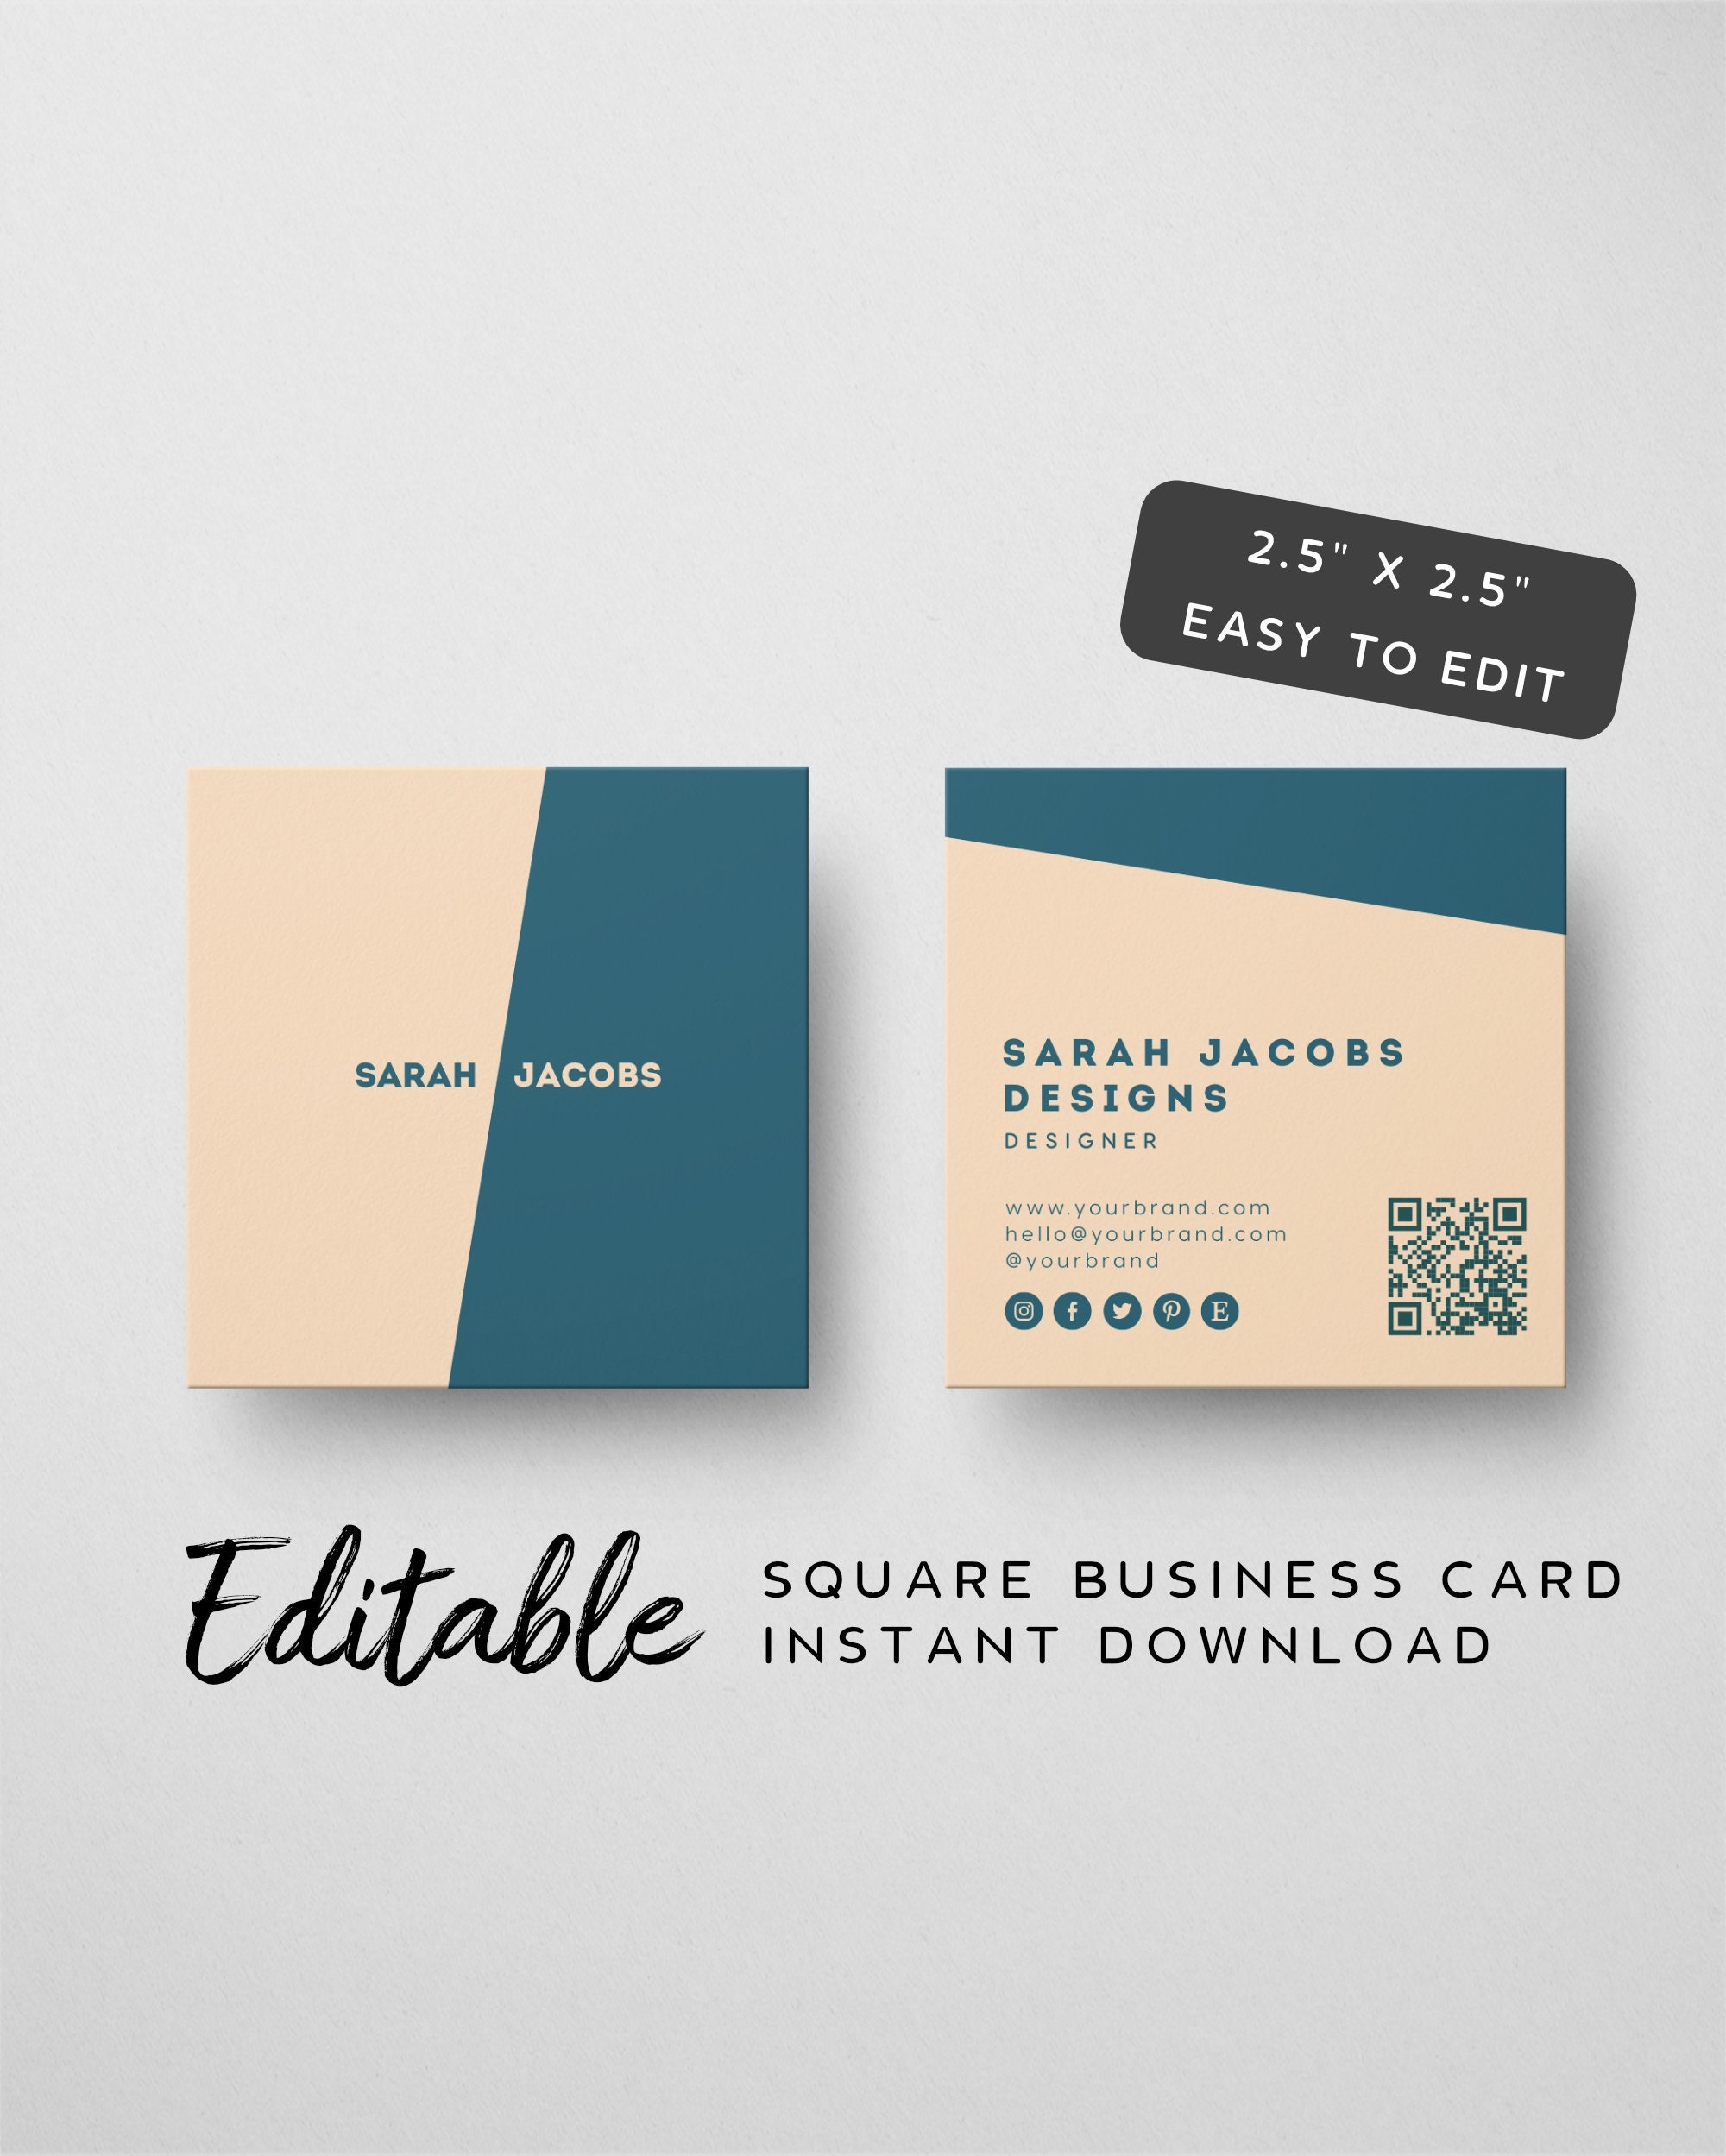 business card Color Palette